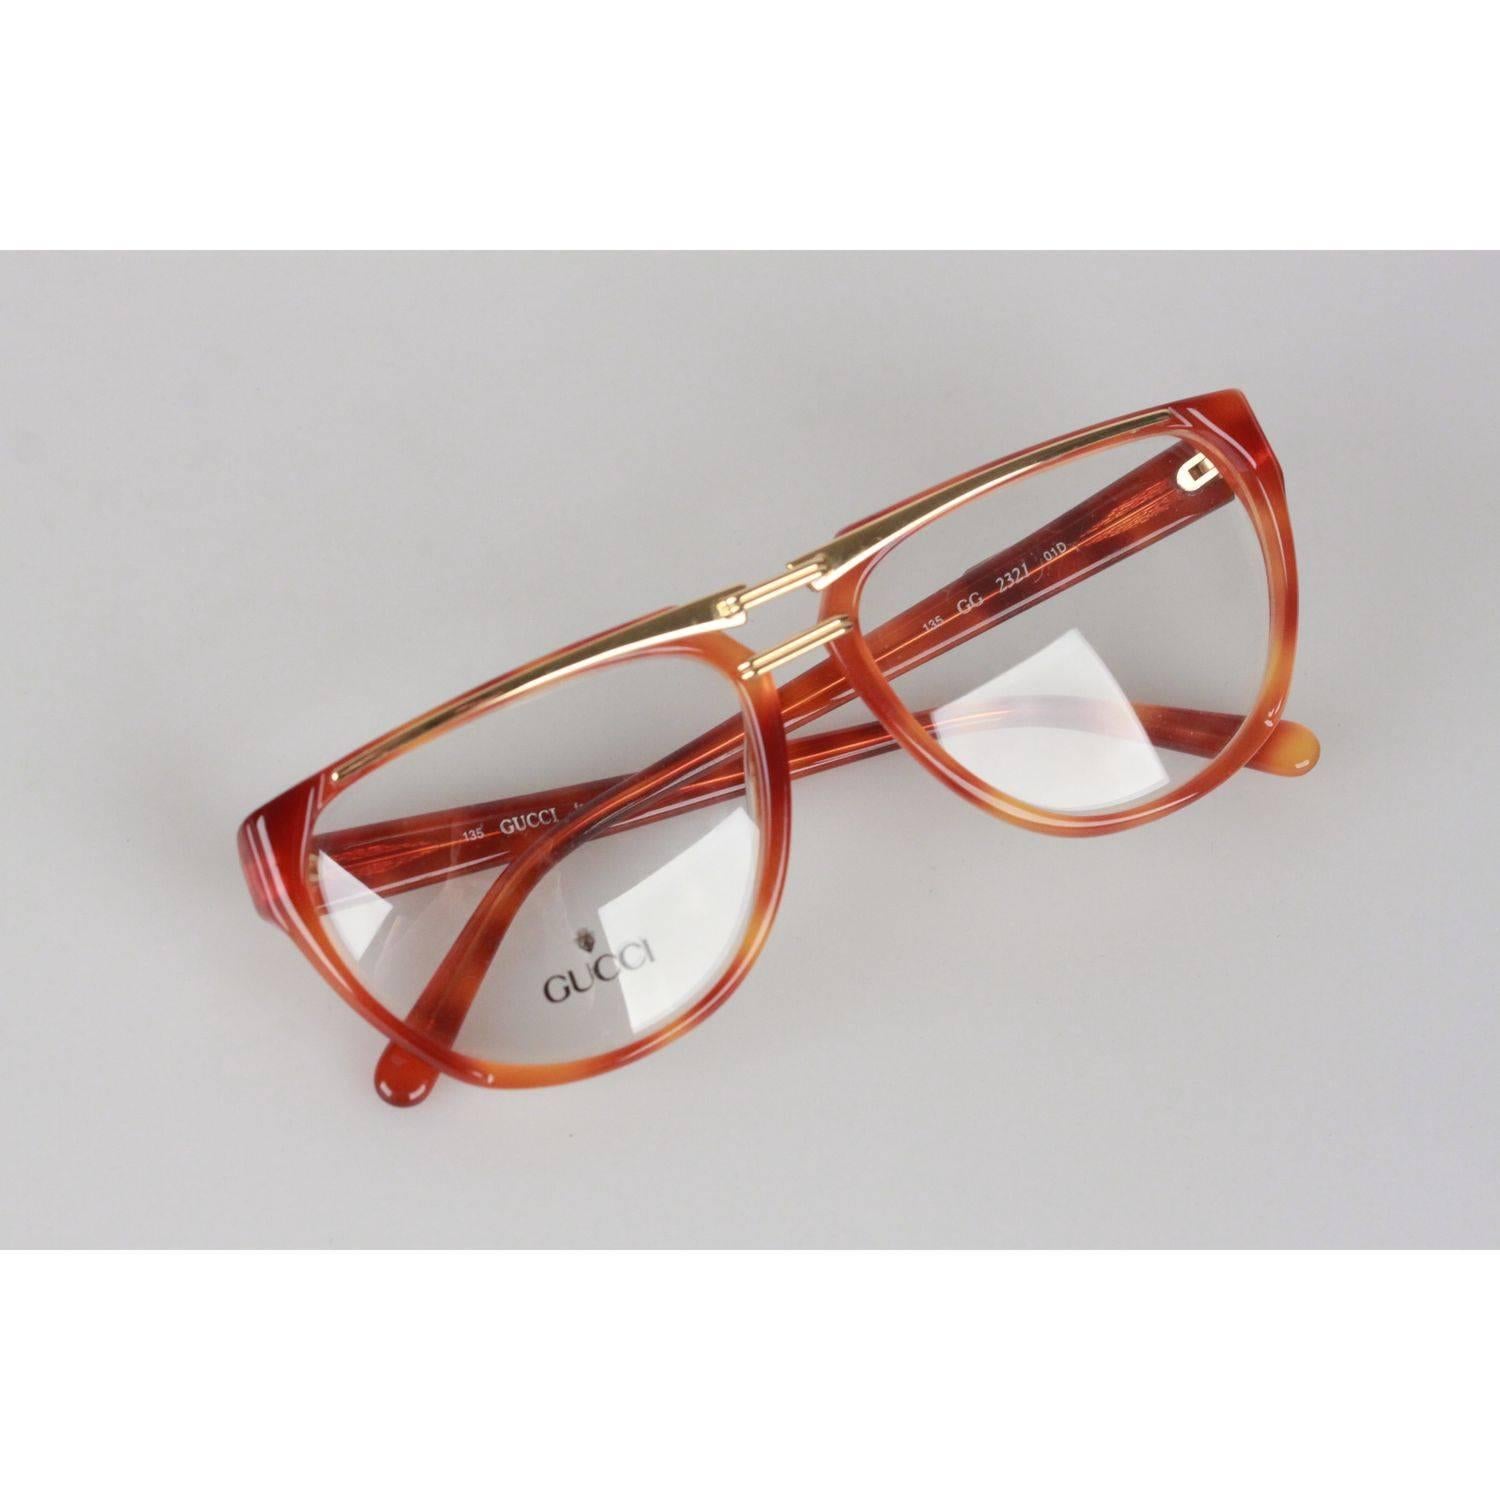 Gucci Vintage Brown Gold Eyeglasses Unisex Frame GG 2321 57-15 13 OS 5